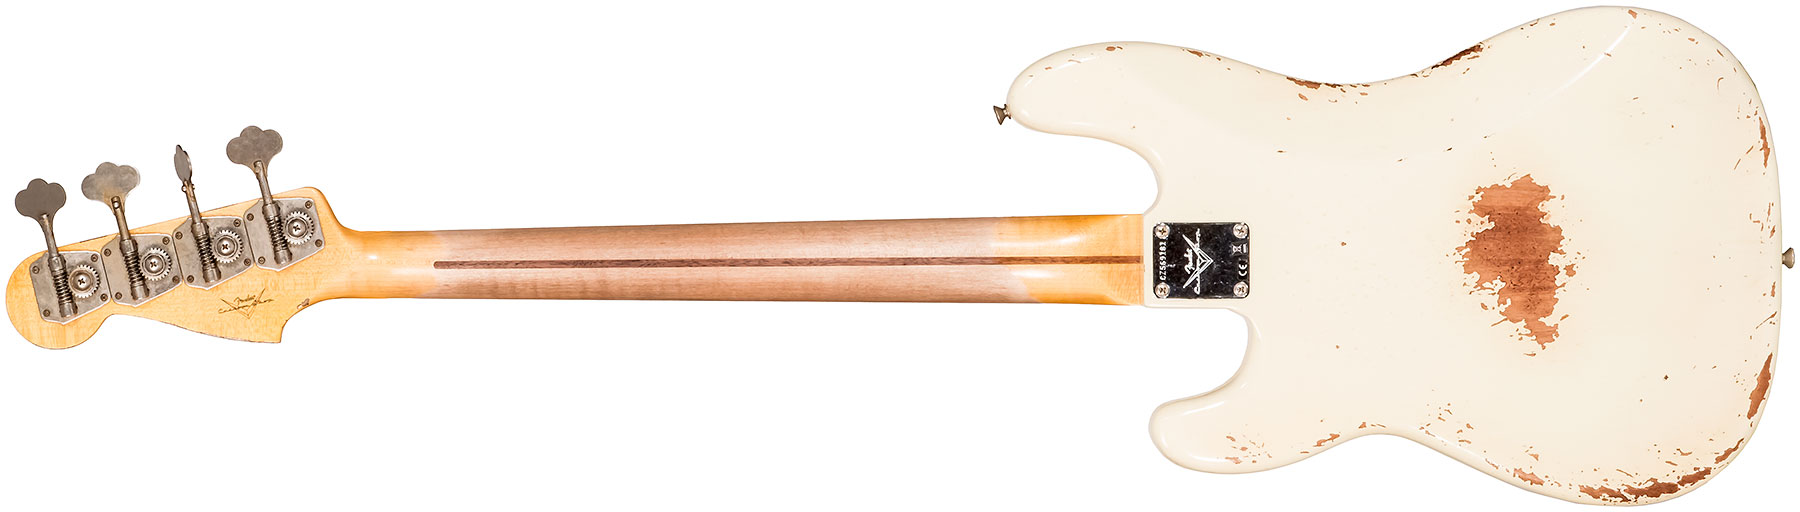 Fender Custom Shop Precision Bass 1958 Mn #cz569181 - Heavy Relic Vintage White - Basse Électrique Solid Body - Variation 1